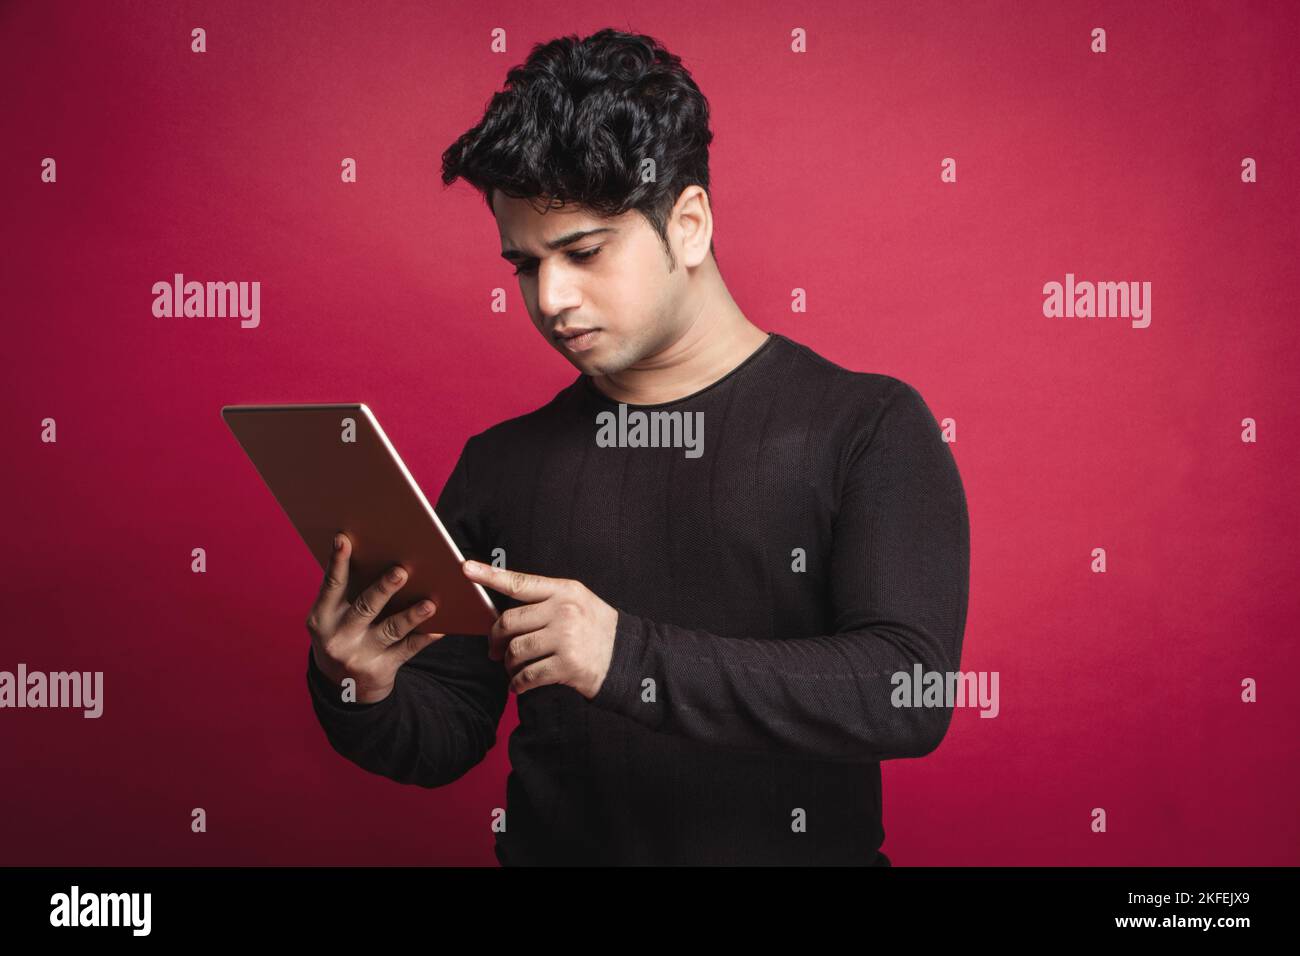 Serio giovane indiano in una t-shirt nera con un tablet digitale su sfondo rosso Foto Stock